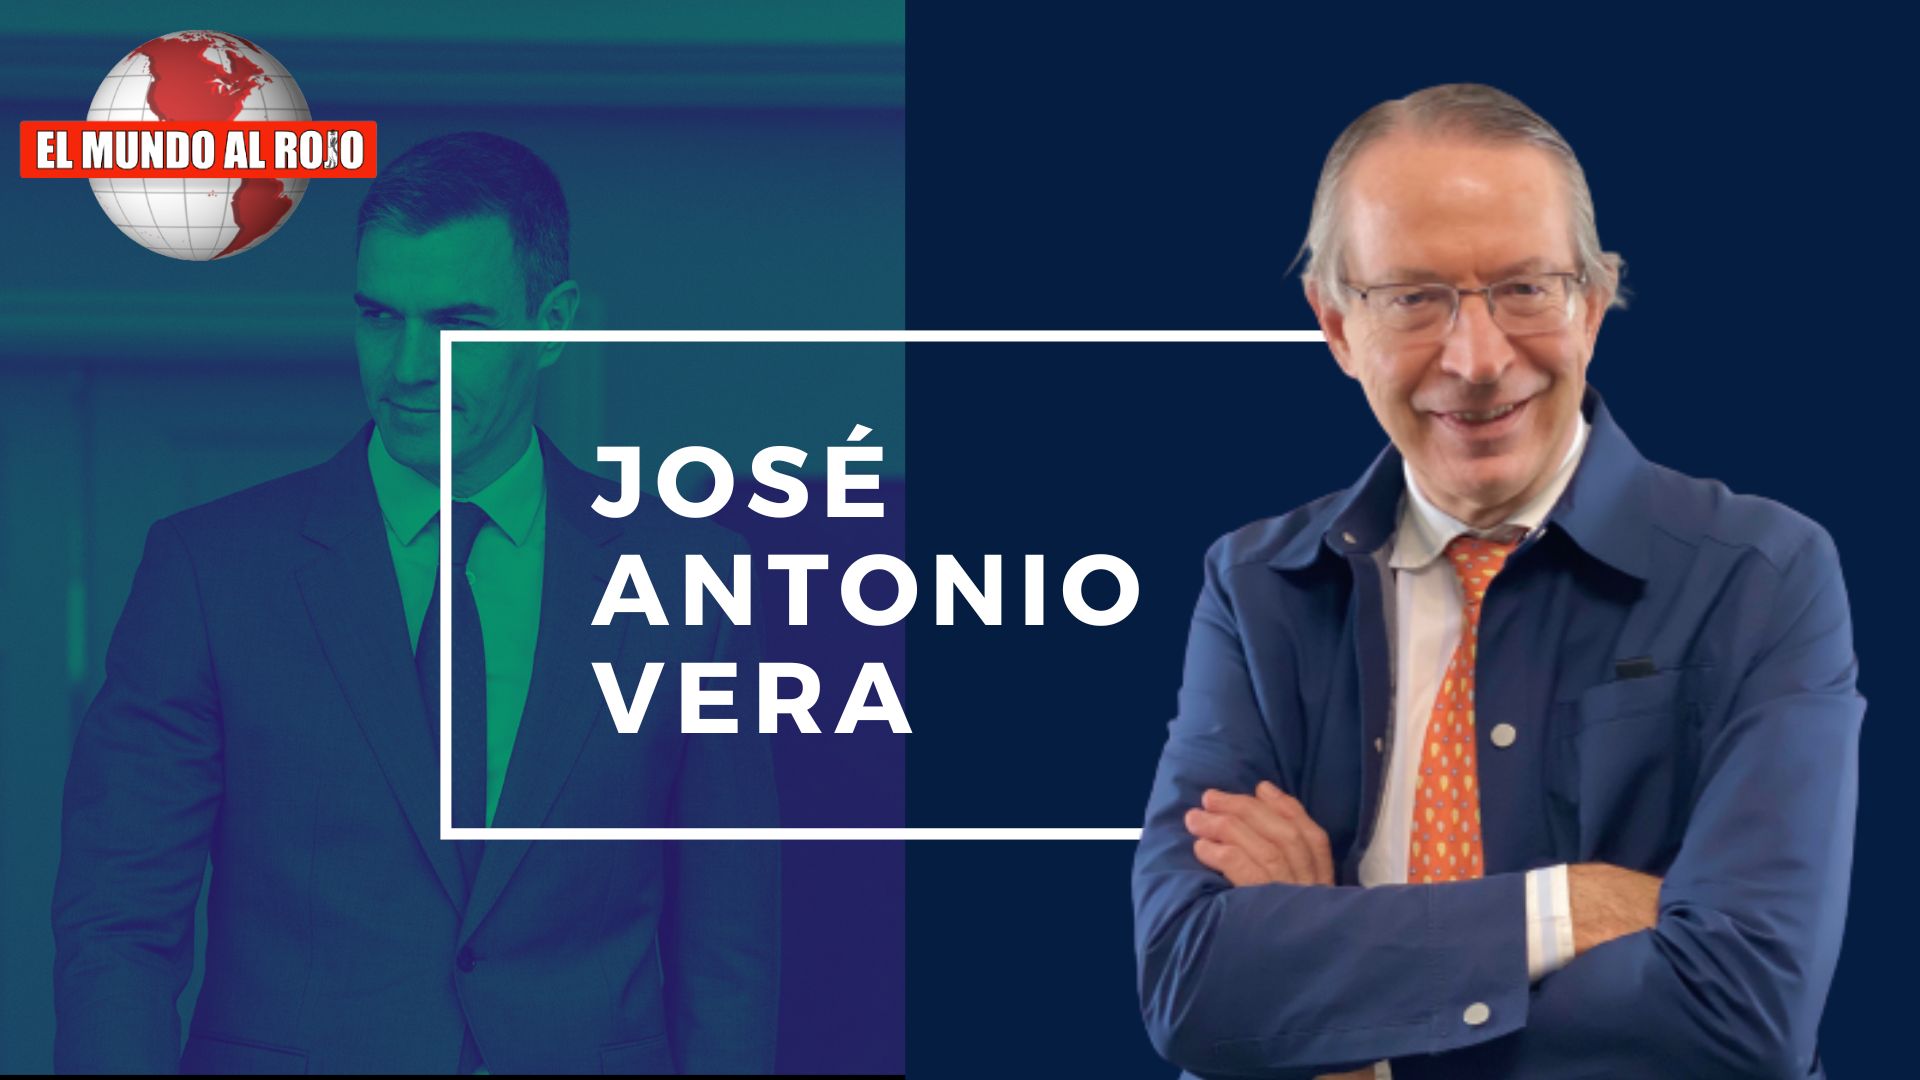 JOSÉ ANTONIO VERA, EL FISCAL DE SÁNCHEZ ORDENÓ ESCONDER EL CASO KOLDO-PSOE EN ELECCIONES